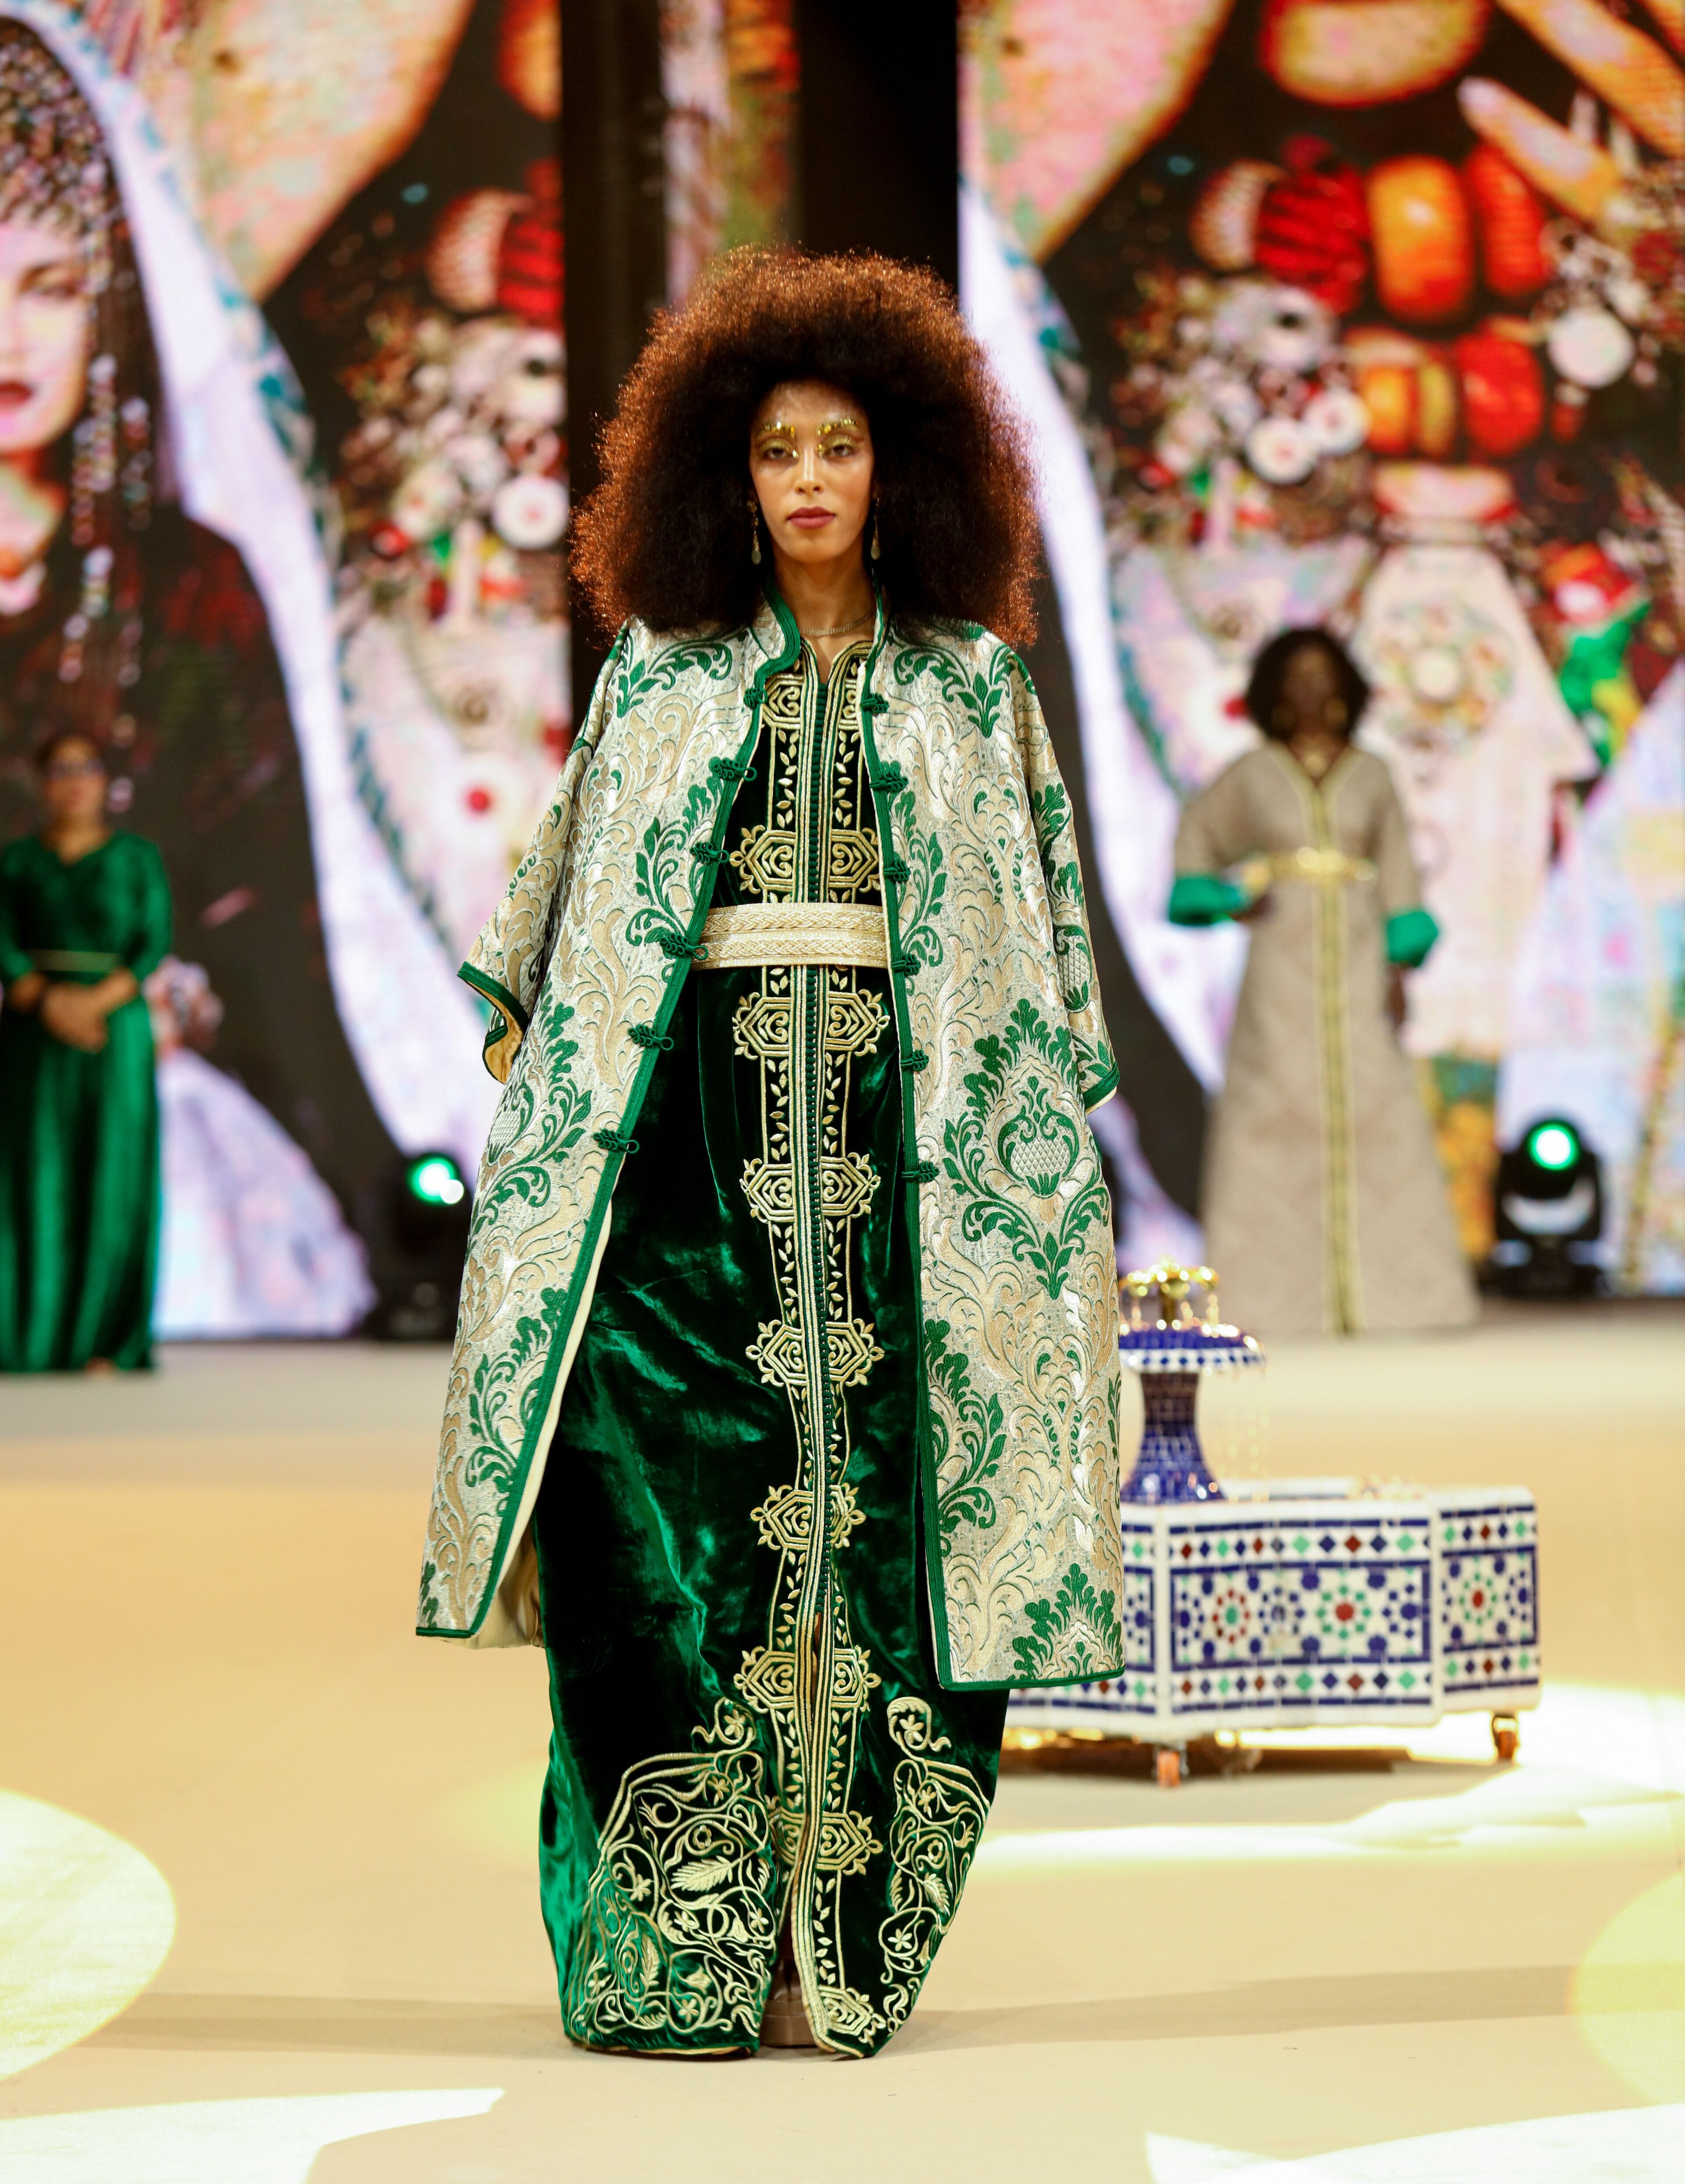 Un mannequin à la coiffure afro présente une élégante robe traditionnelle verte et dorée lors d'un défilé de mode.